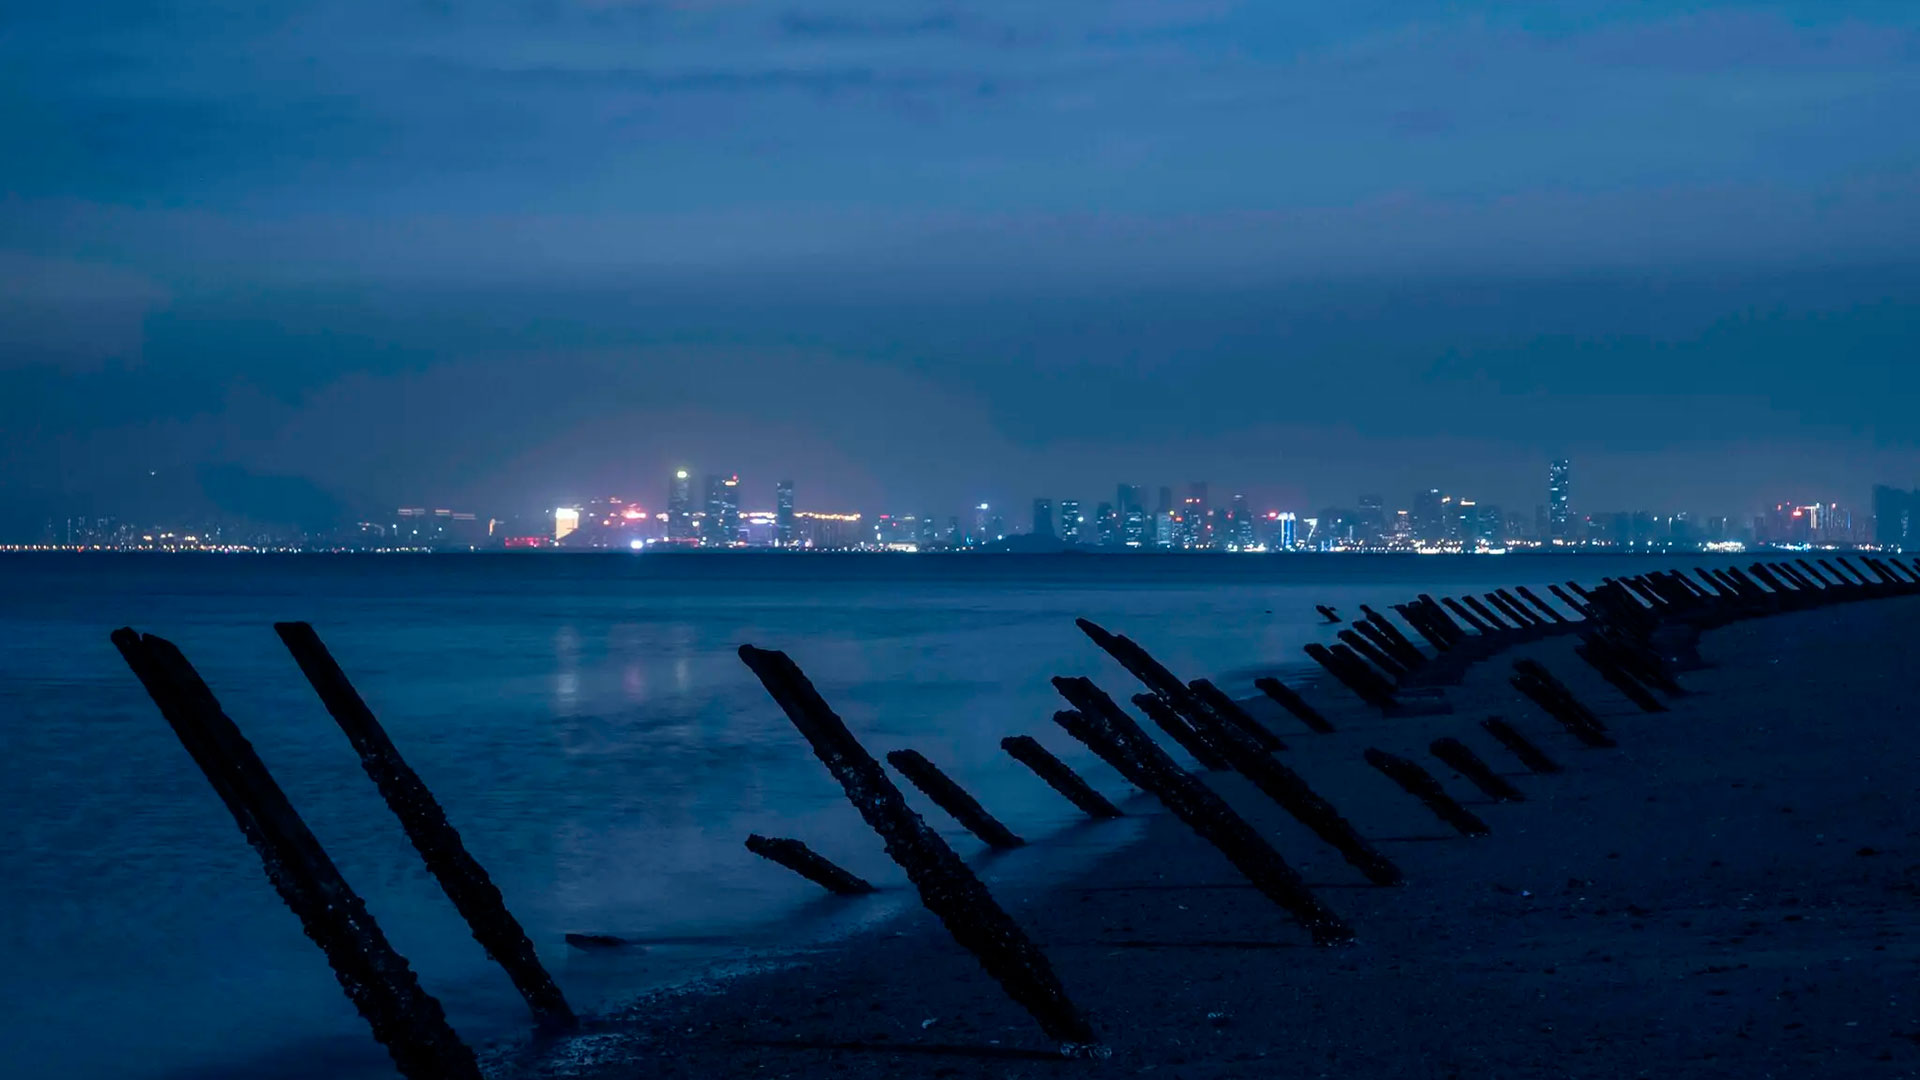 Barricadas anti-aterrizaje de décadas de antigüedad se alinean en la costa a lo largo de una playa en Kinmen, una isla periférica de Taiwán. La ciudad china de Xiamen está en la distancia (foto: New York Times)